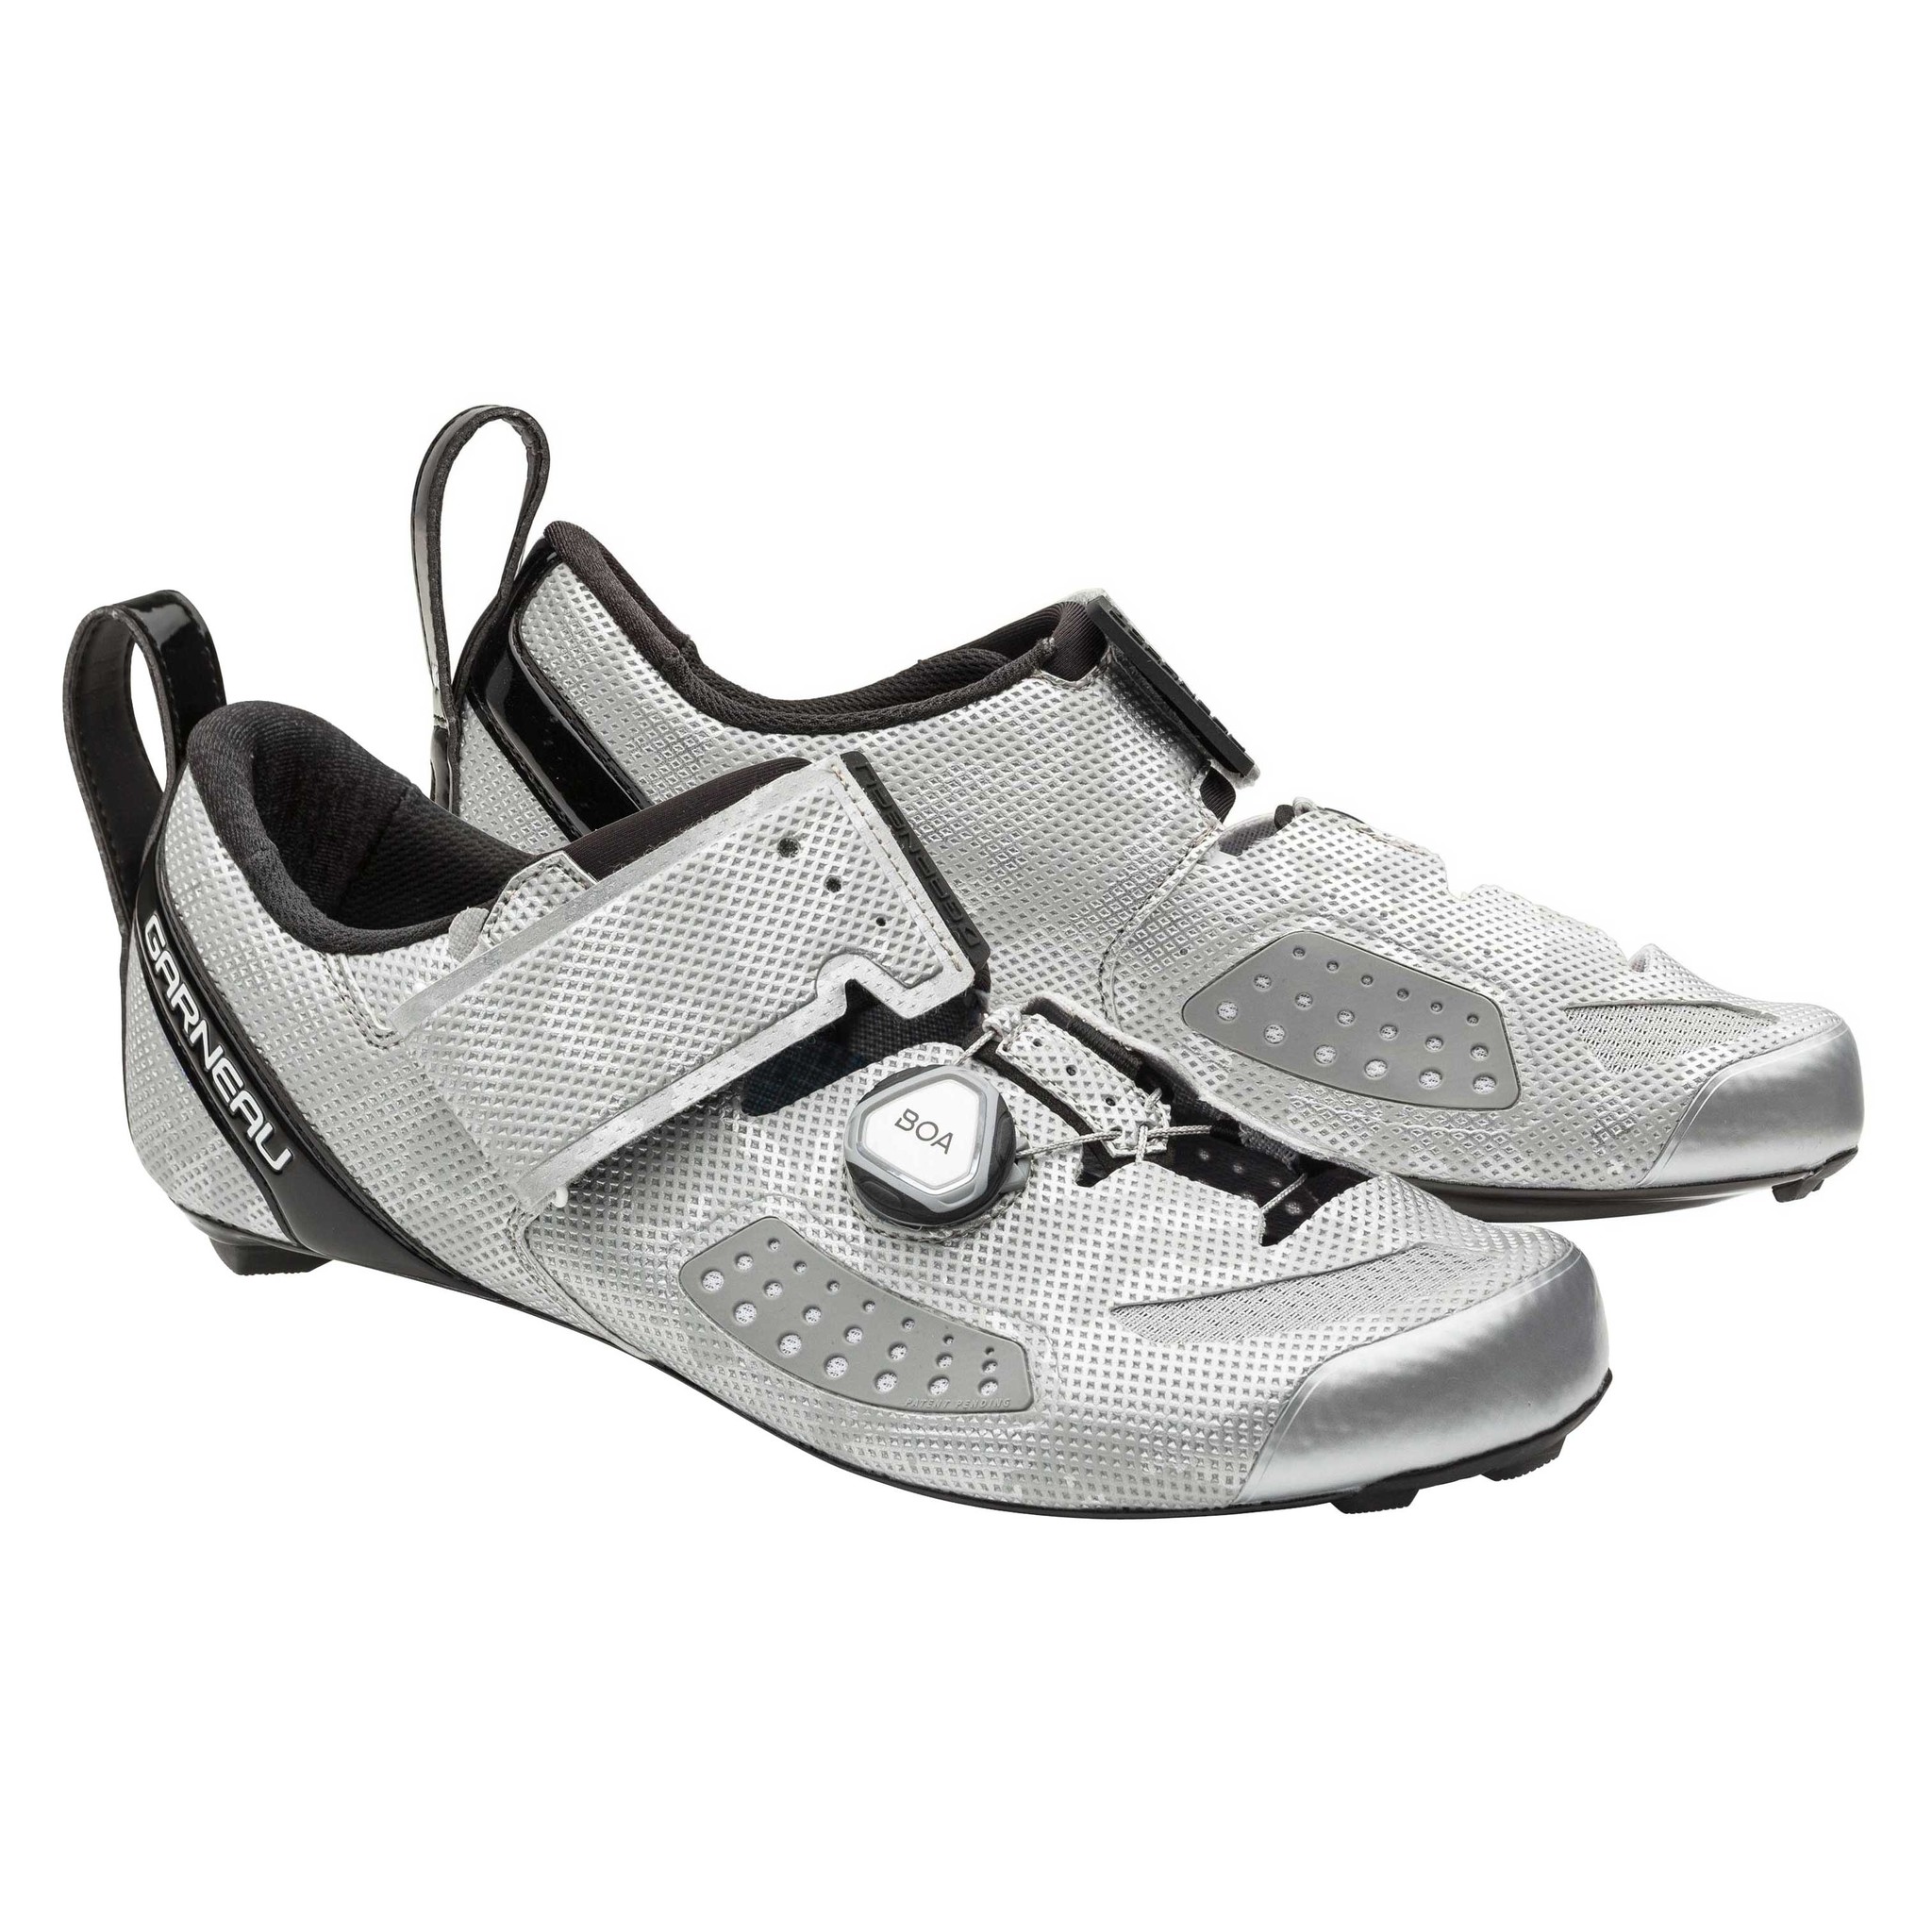 Garneau Men's Tri X-Lite III Shoes